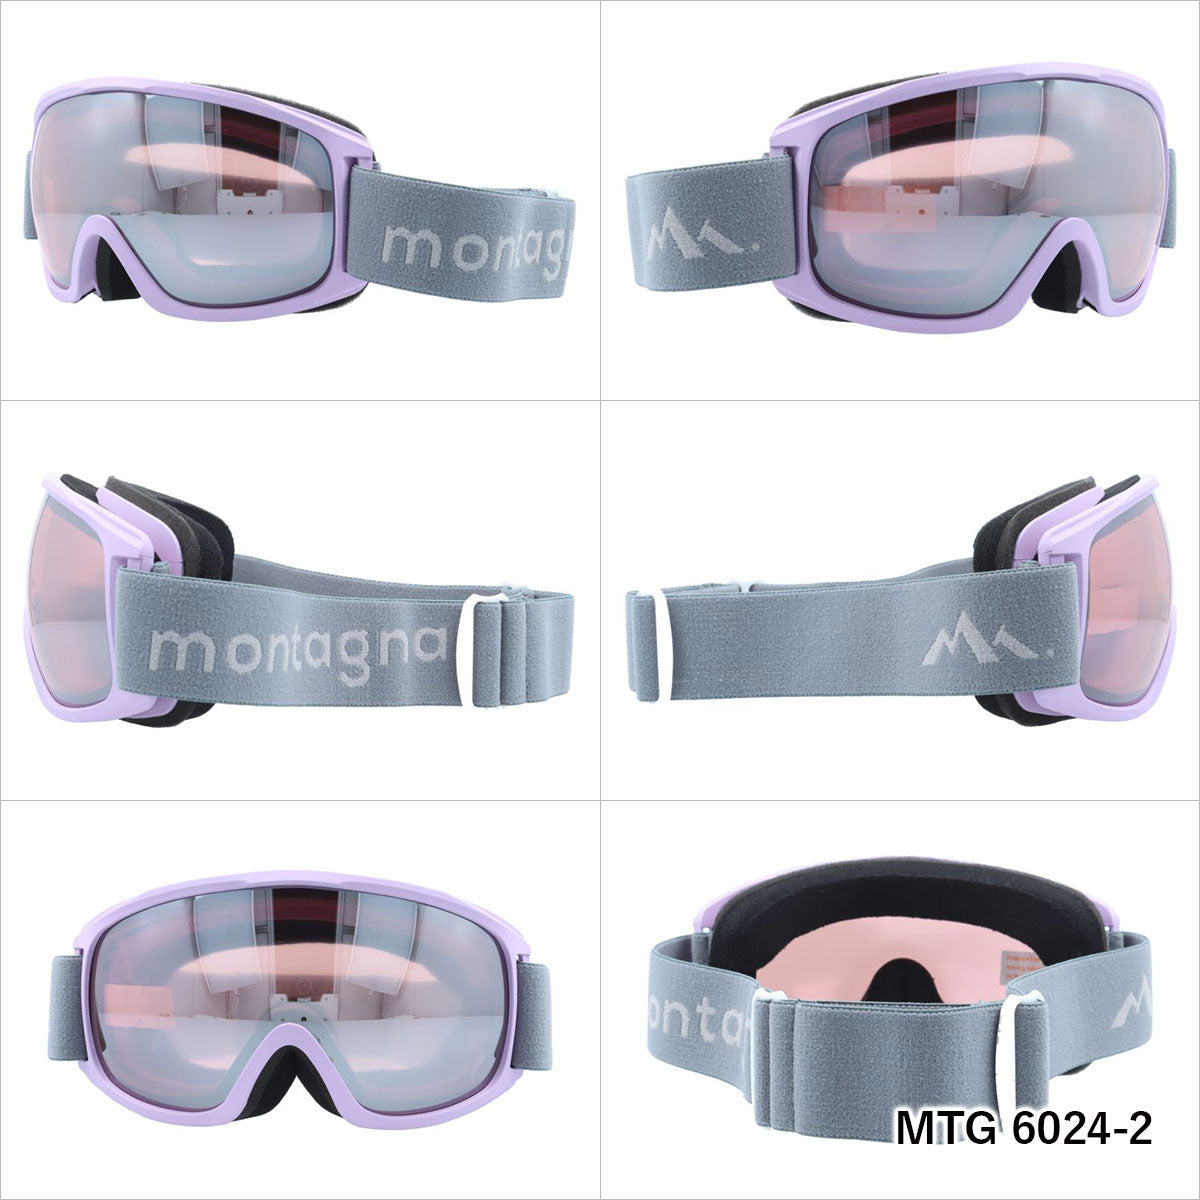 モンターニャ ゴーグル ミラーレンズ アジアンフィット montagna MTG 6024 メンズ レディース スキー スノーボード ウィンタースポーツ 曇り防止 球面レンズ ダブルレンズ 眼鏡対応